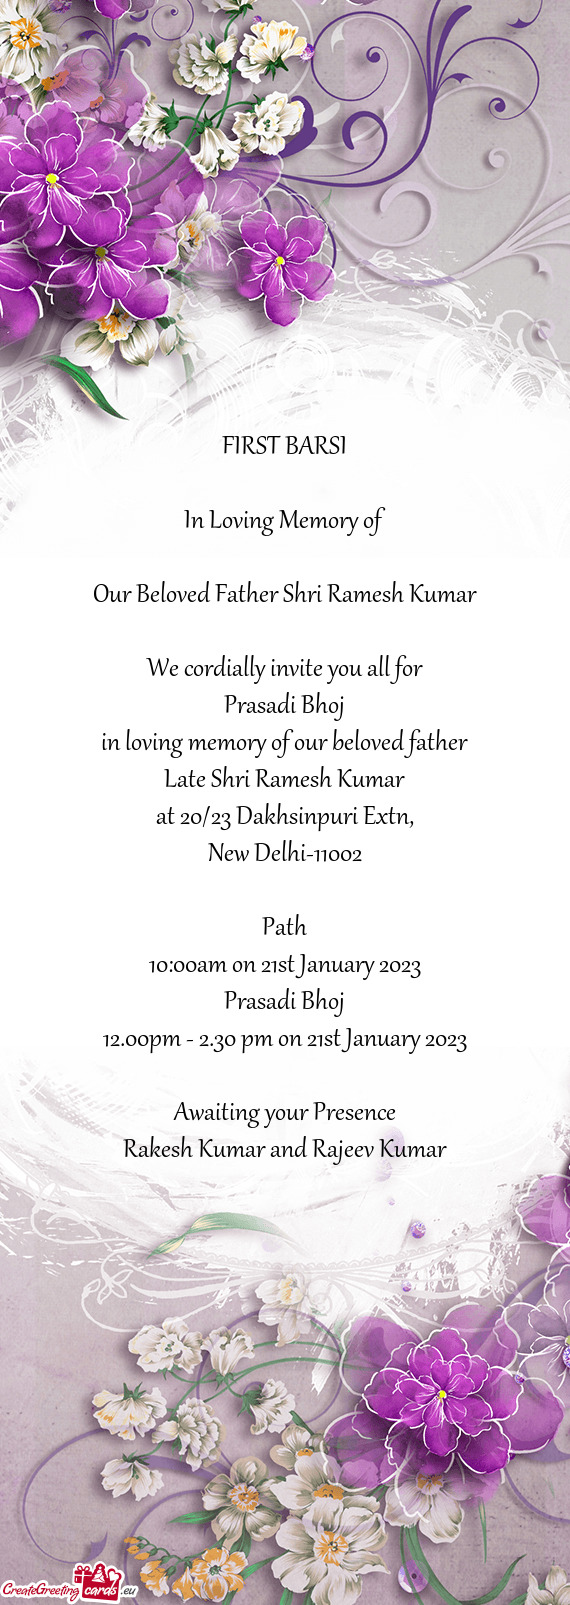 Late Shri Ramesh Kumar